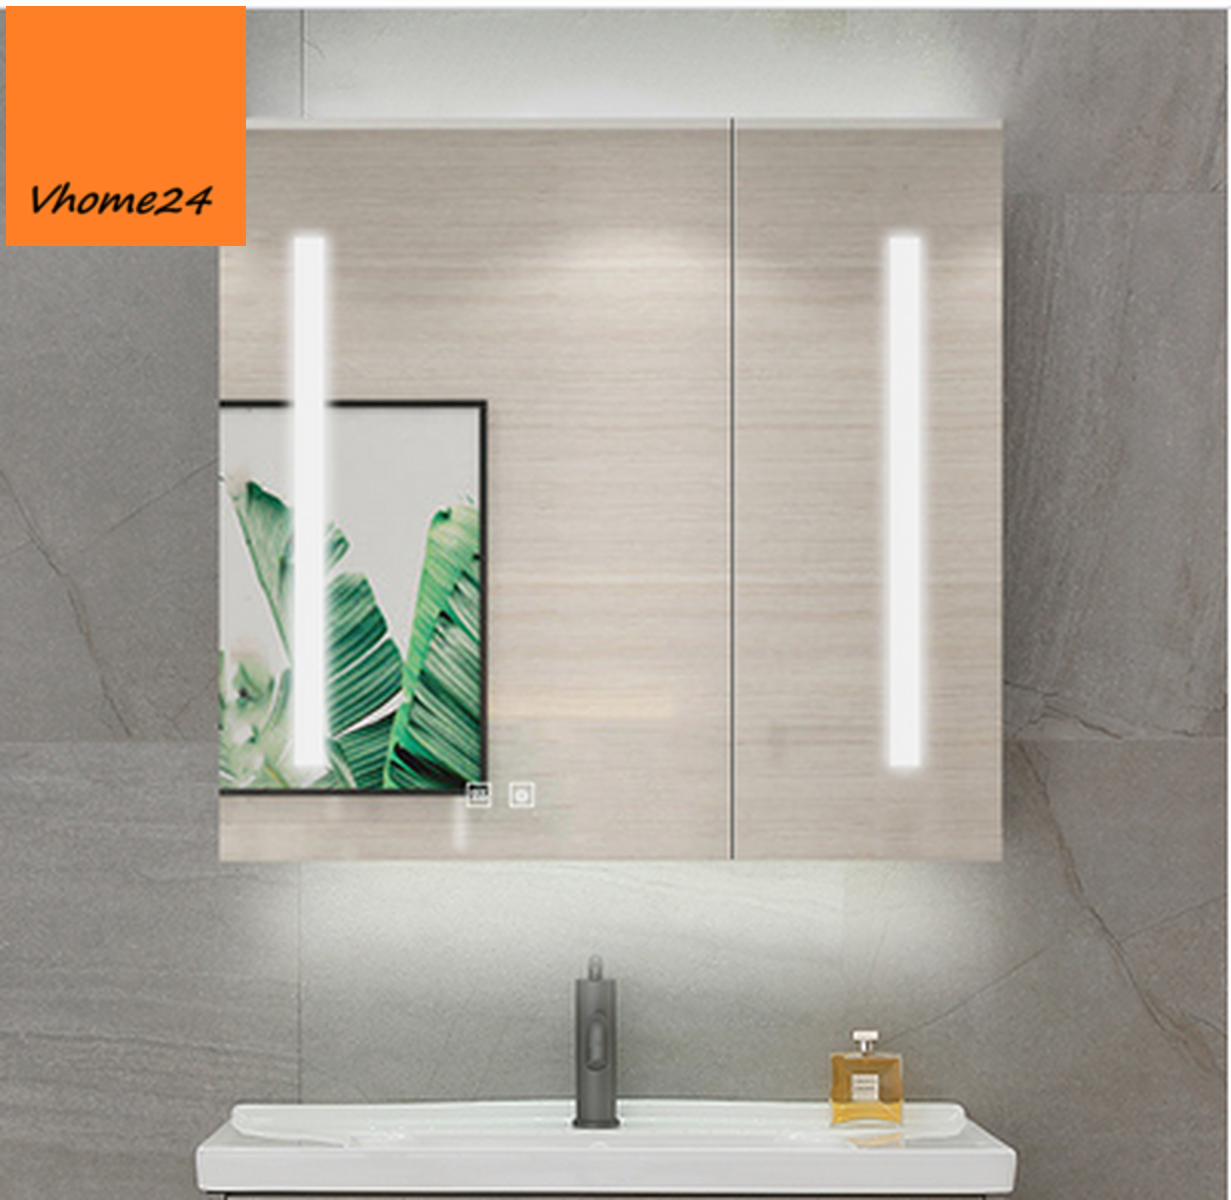 GLE112 tủ gương phòng tắm đèn LED là sự kết hợp hoàn hảo giữa tính năng và kiểu dáng sang trọng. Với đèn LED tiện dụng và chất liệu gương cao cấp, GLE112 tủ gương sẽ là món đồ nội thất không thể thiếu trong phòng tắm của bạn. Hãy xem thêm hình ảnh để khám phá sự đẹp và tiện nghi của GLE112 tủ gương phòng tắm.